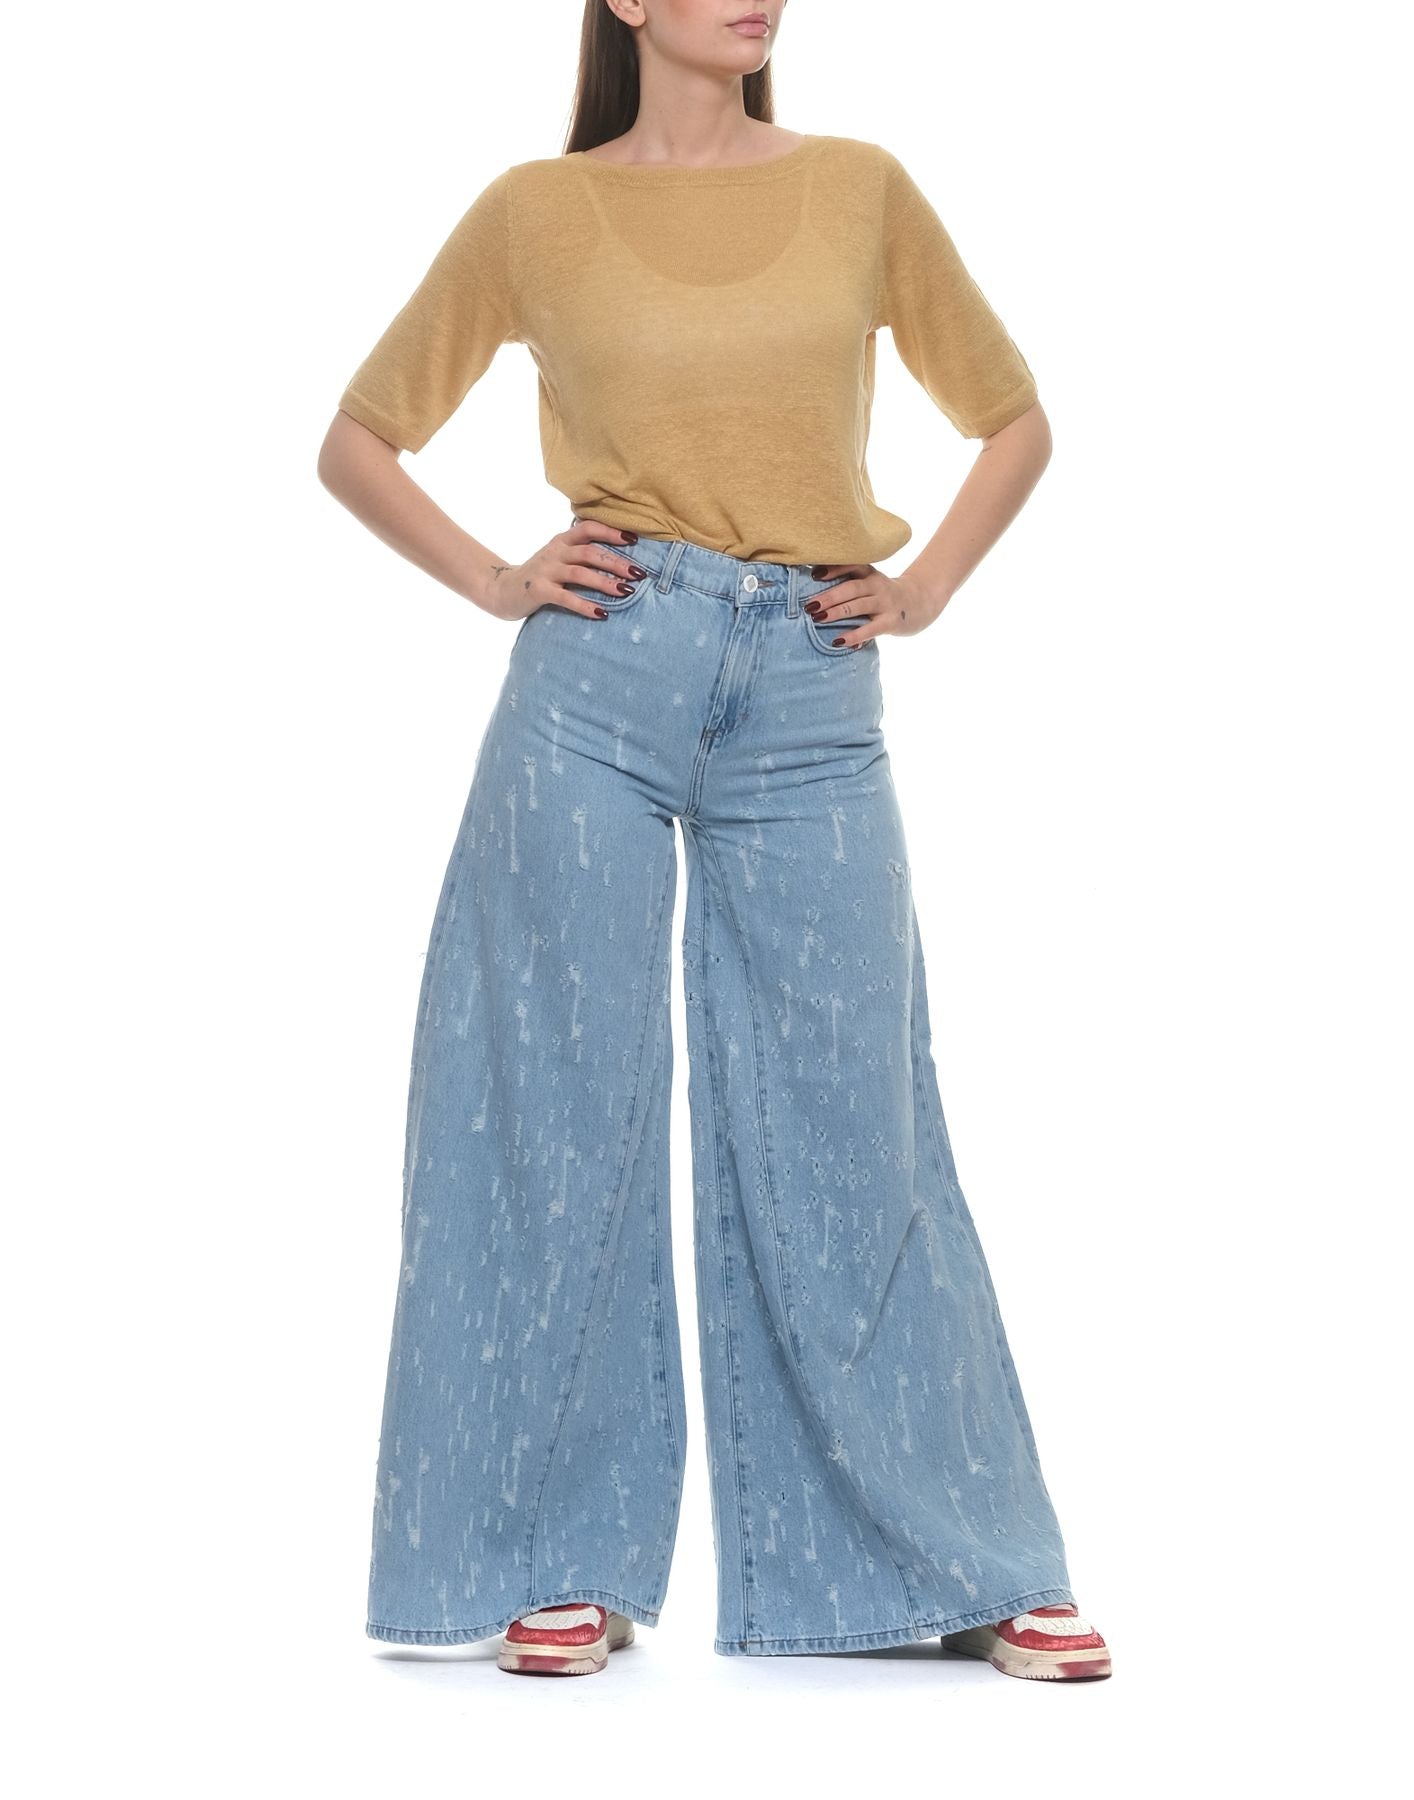 Jeans Woman AMD002D3802021 Descanse Amish